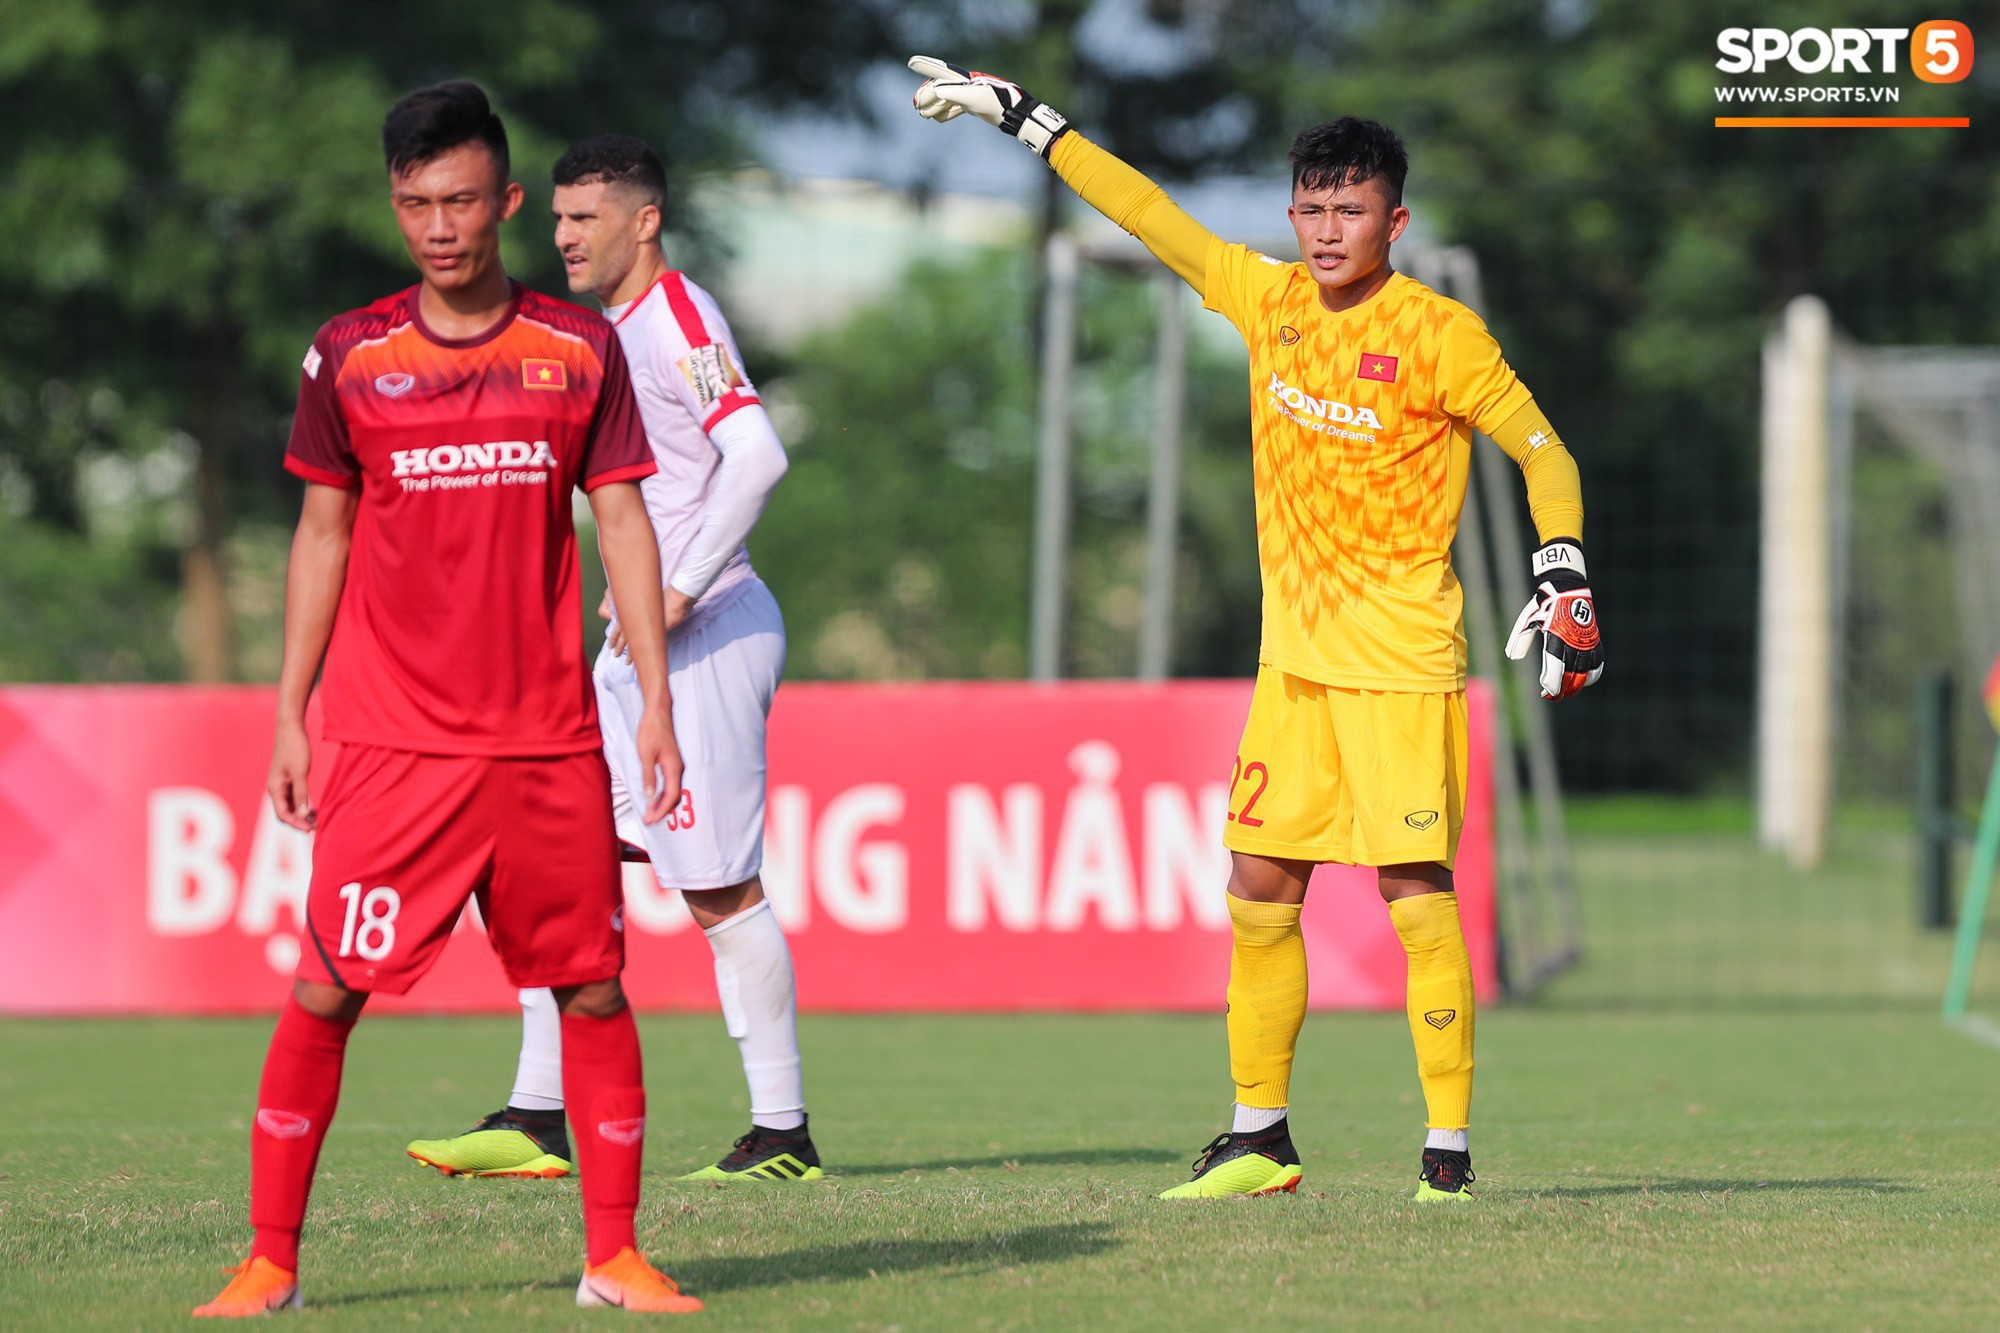 Bùi Tiến Dũng xuất hiện với cổ tay băng bó, trầm tư làm khán giả trong trận đấu tập của U23 Việt Nam - Ảnh 7.